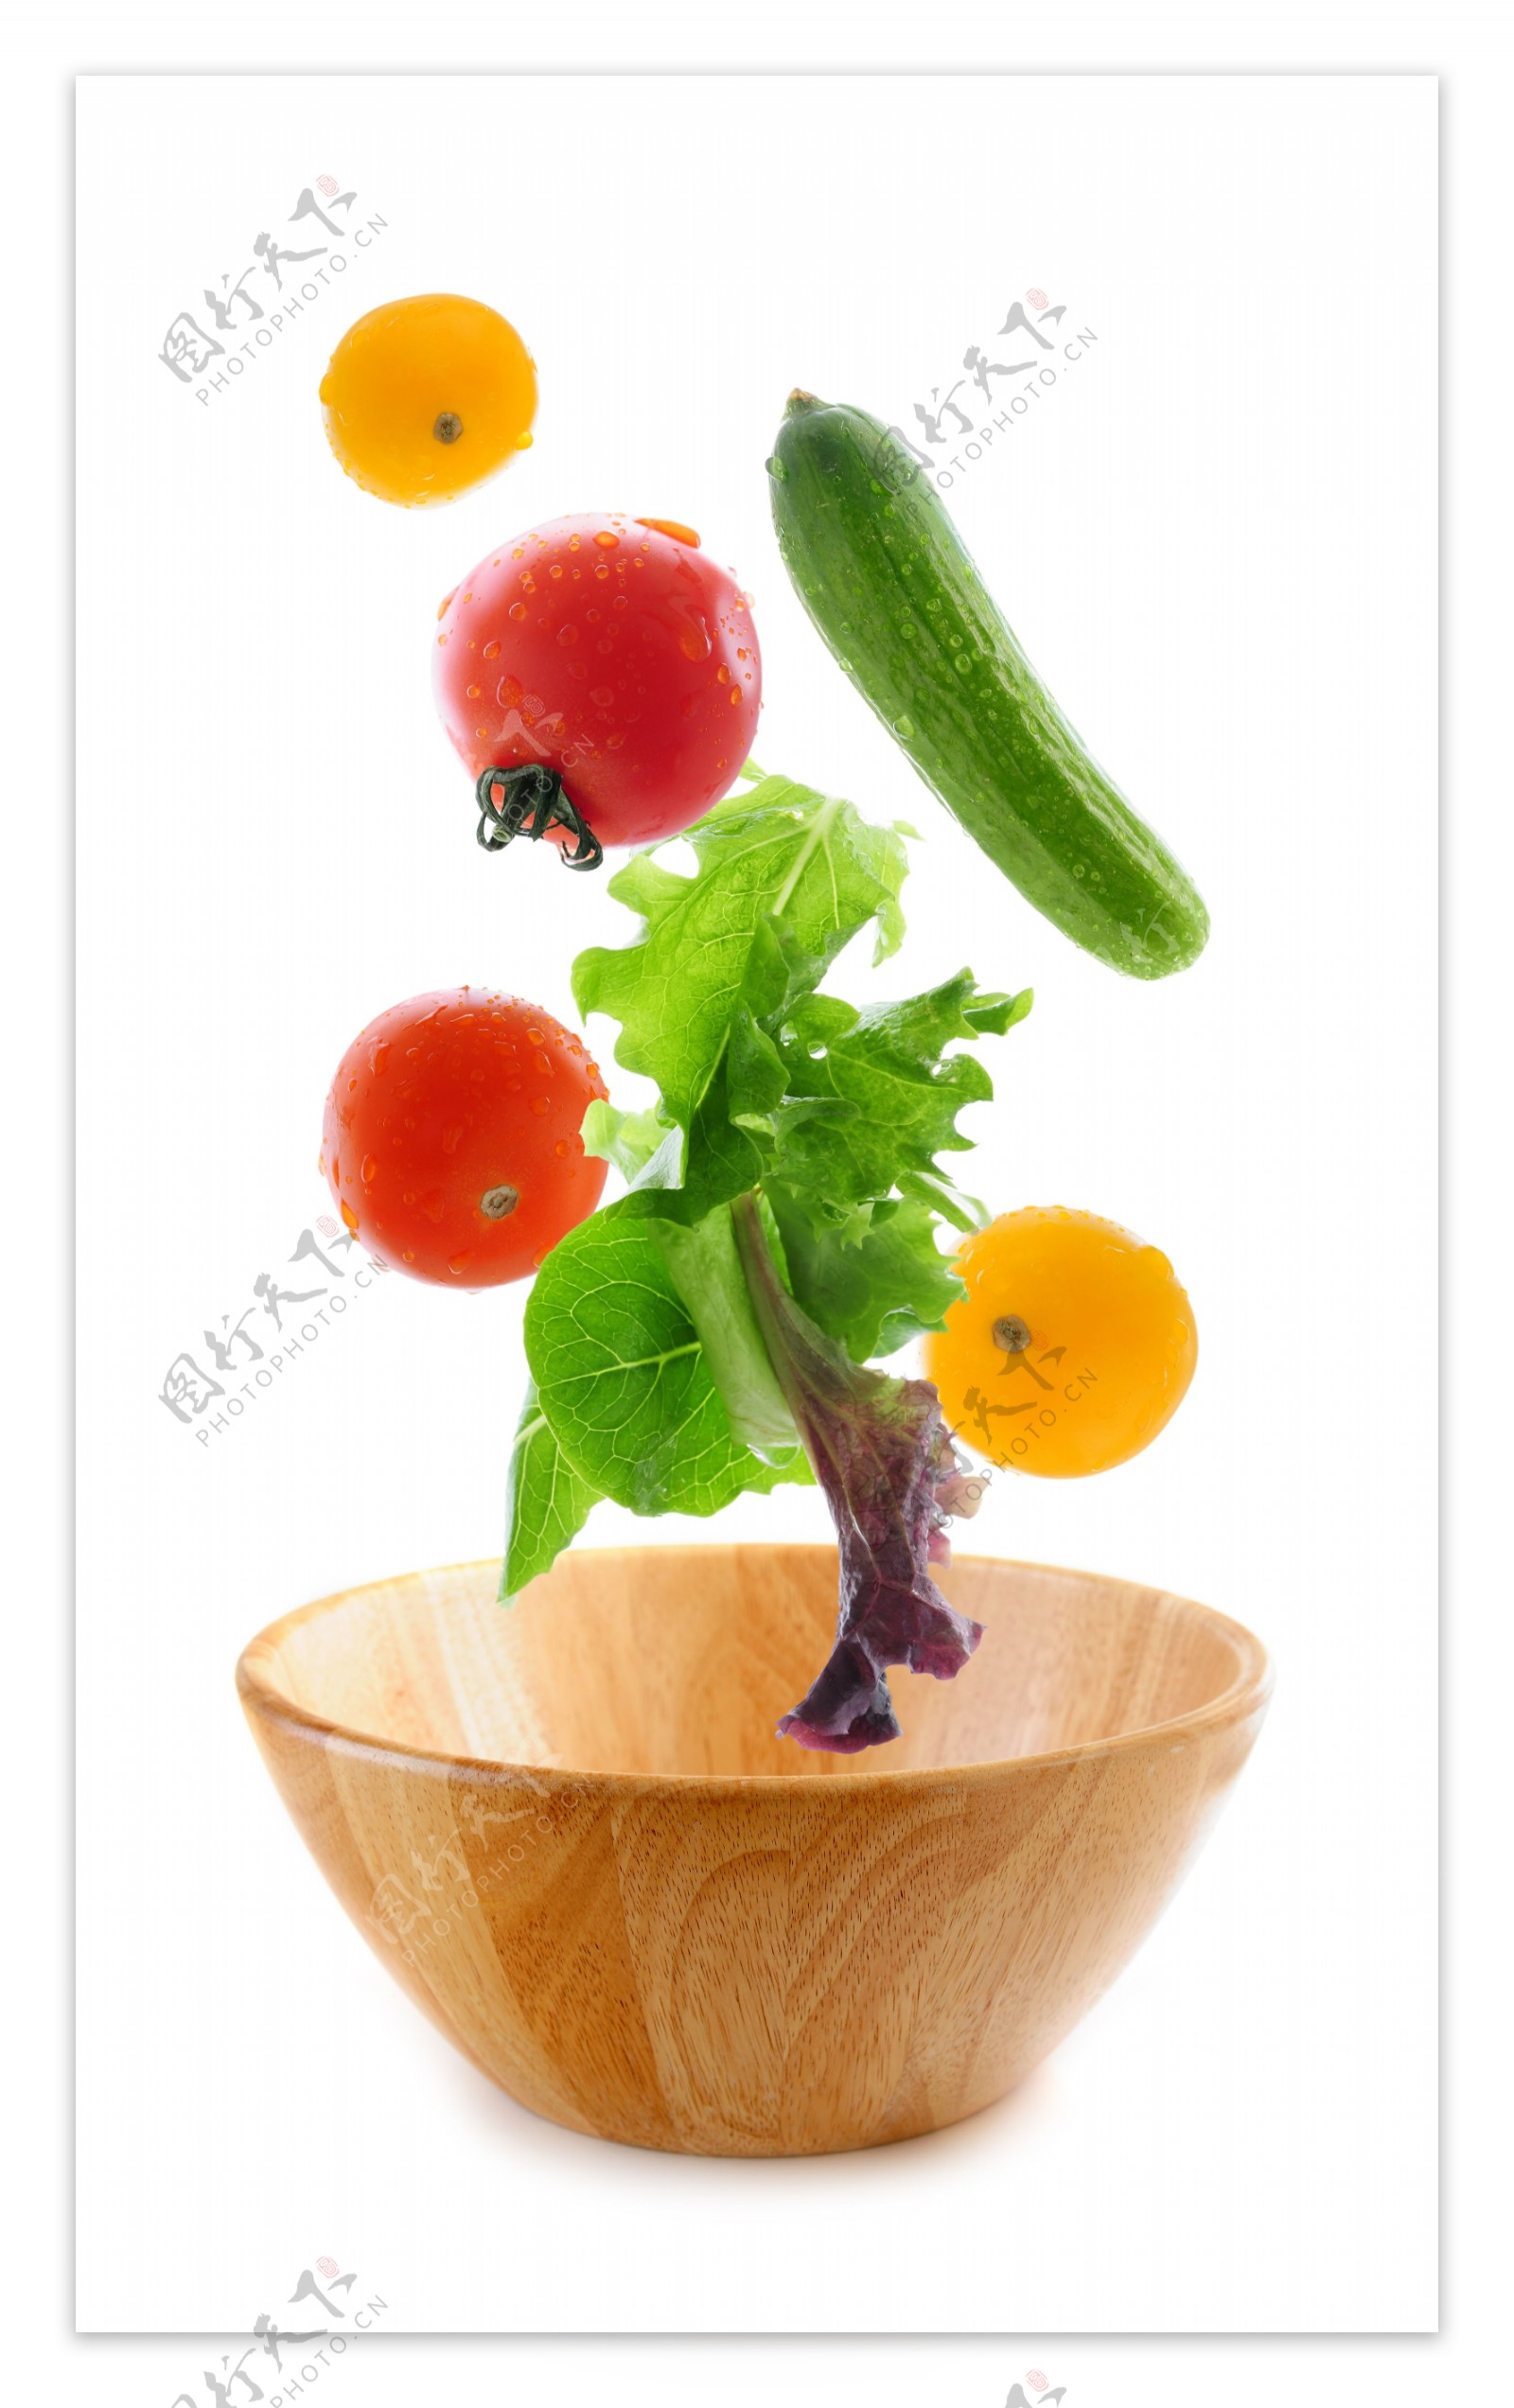 绿色蔬菜摄影图片